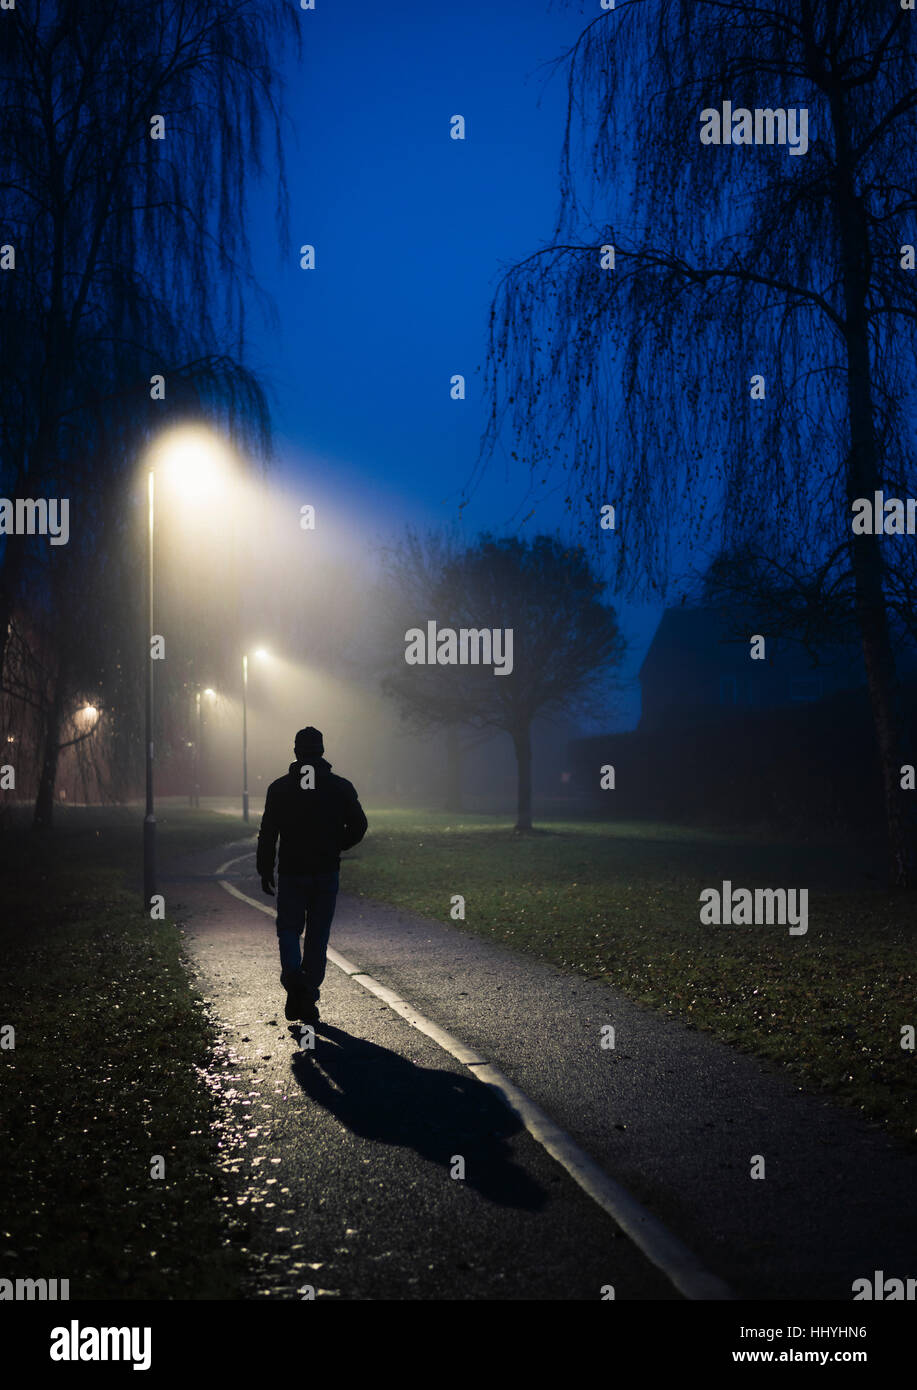 Une figure solitaire marchant le long d'un chemin éclairé par des lampadaires Banque D'Images